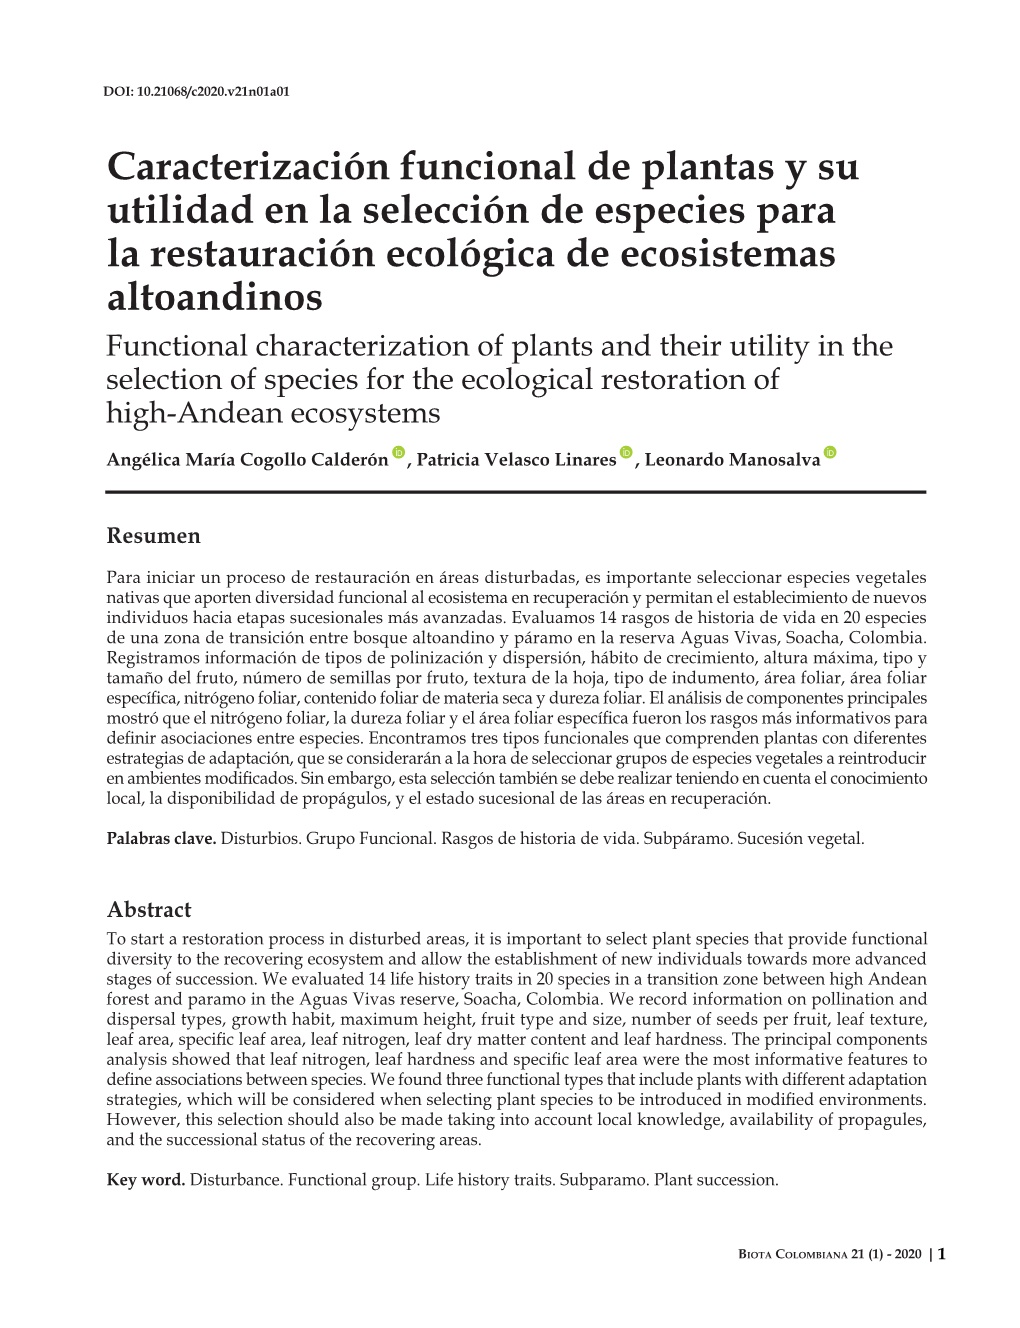 Caracterización Funcional De Plantas Y Su Utilidad En La Selección De Especies Para La Restauración Ecológica De Ecosistemas